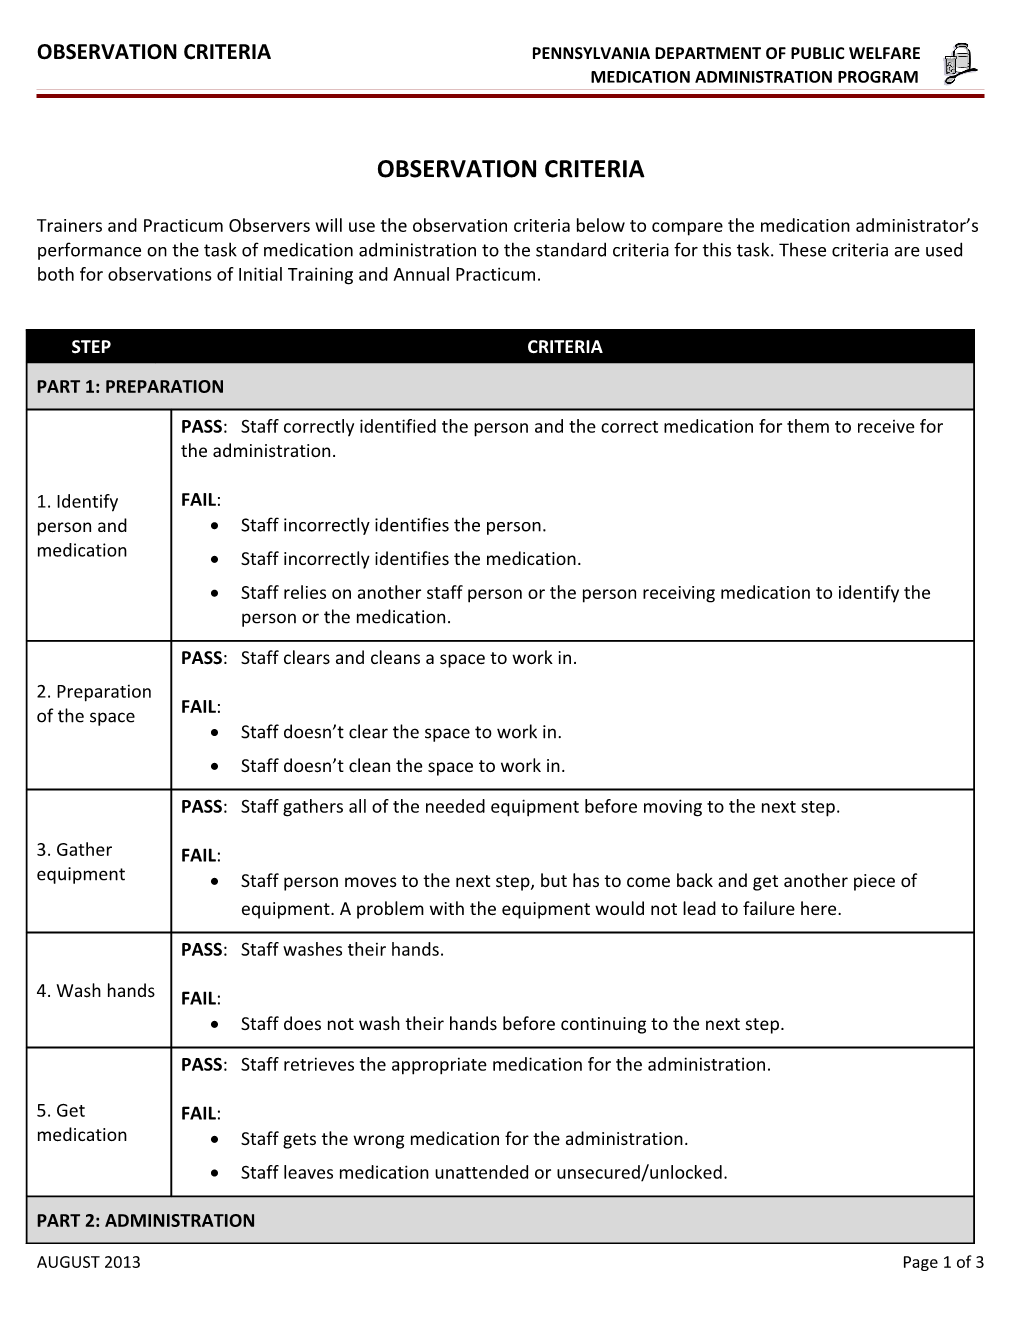 Medication Administration Observation Criteria Worksheet